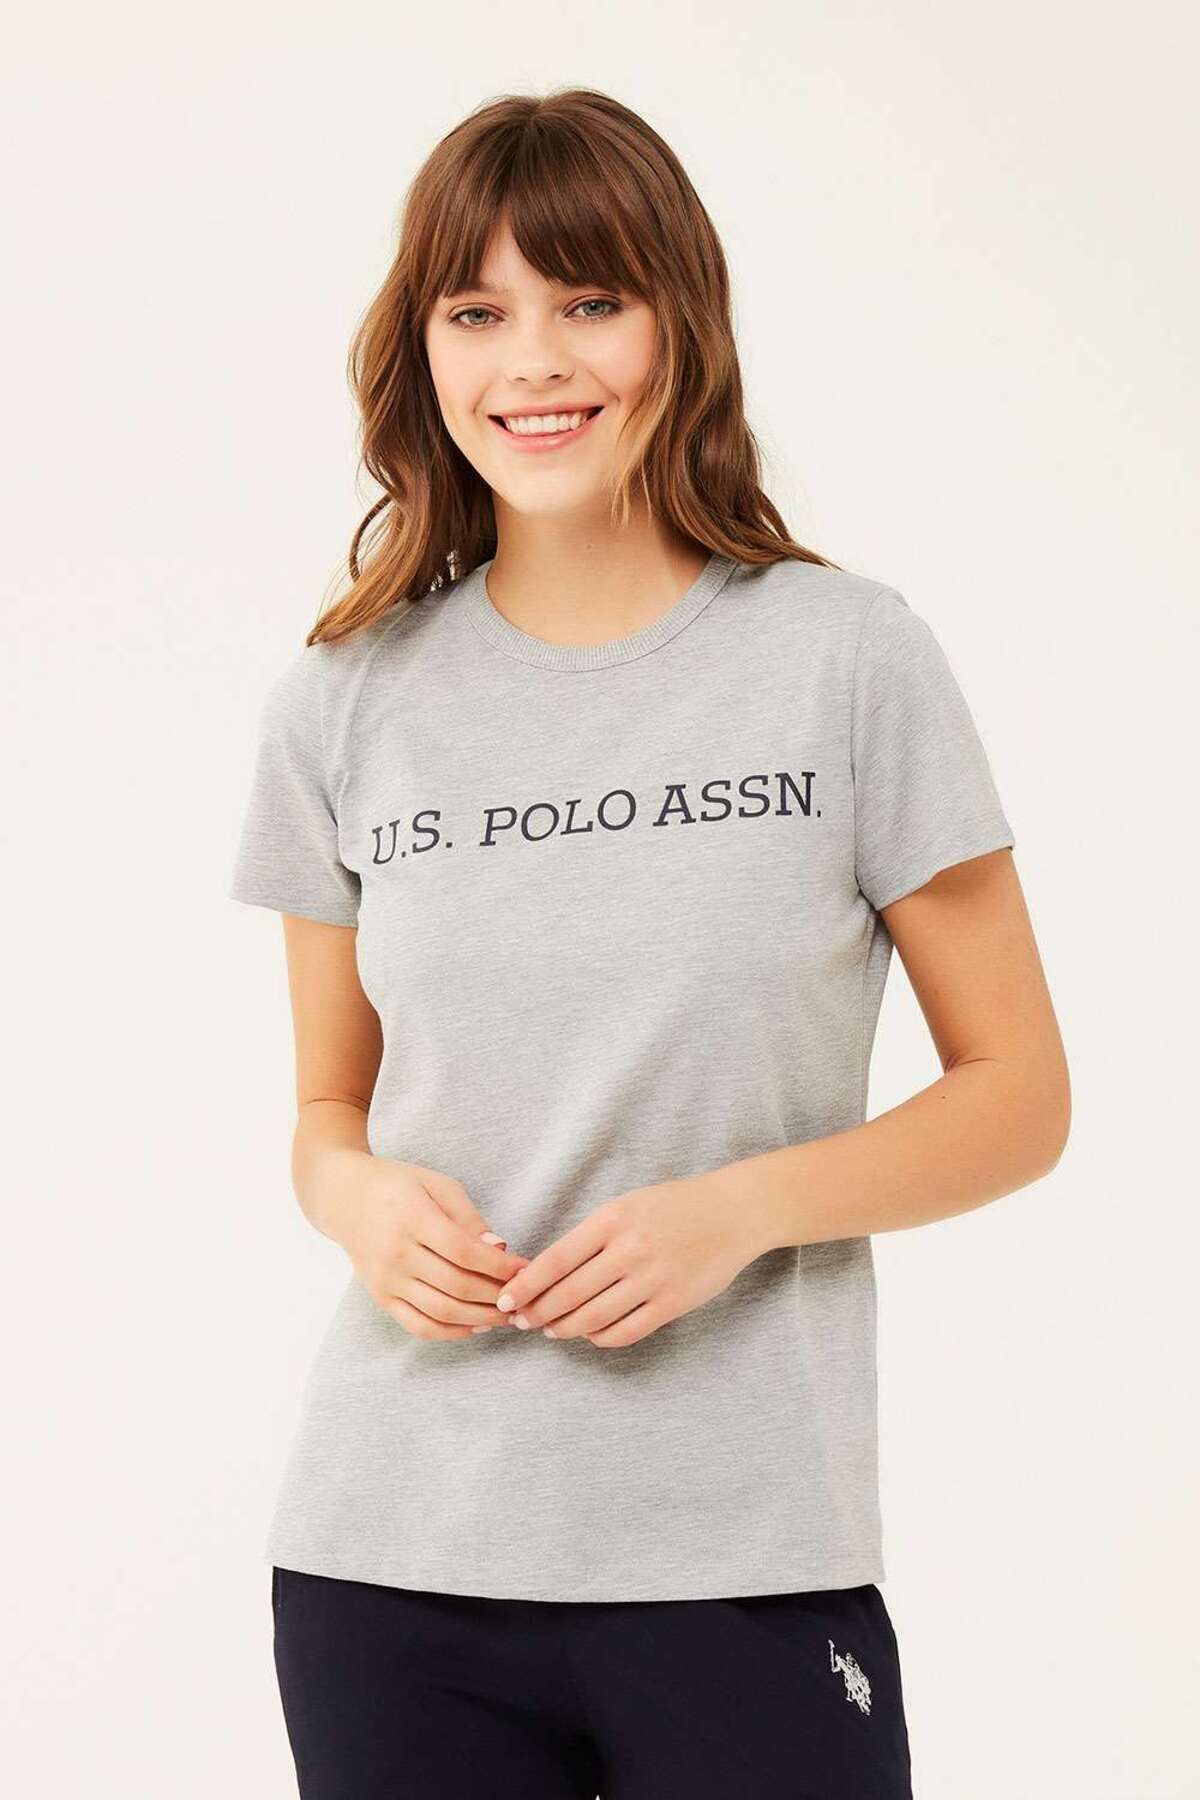 U.S. Polo Assn. Kadın Gri Melanj Yuvarlak Yaka T-shirt 16595